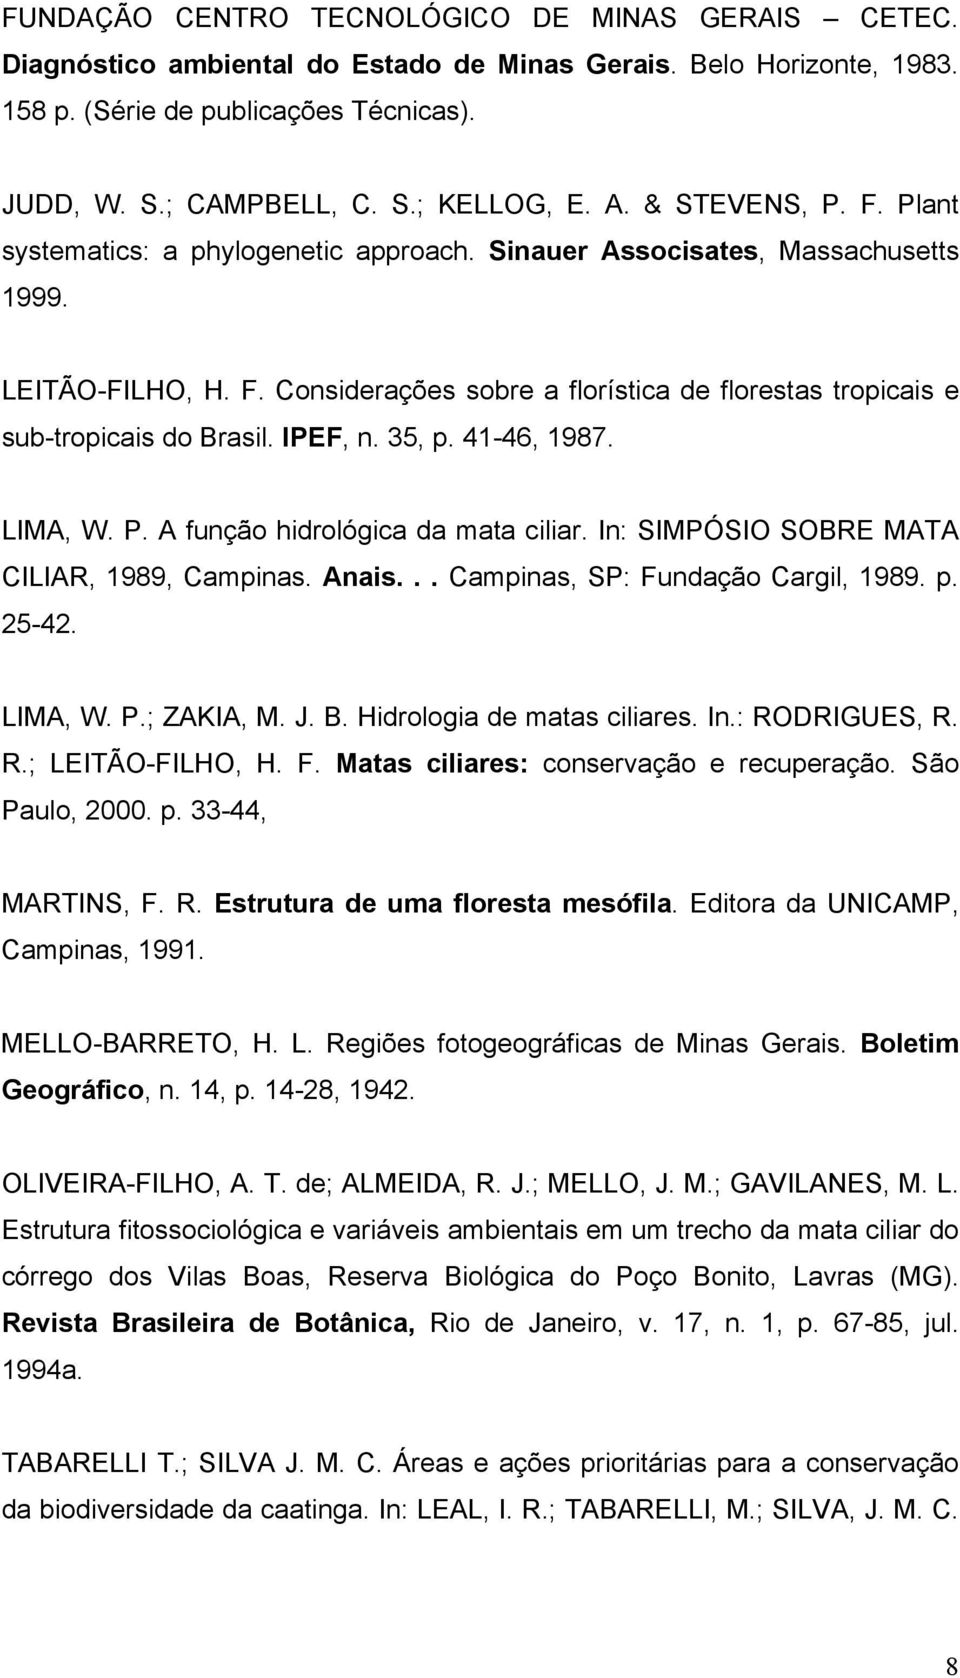 IPEF, n. 35, p. 41-46, 1987. LIMA, W. P. A função hidrológica da mata ciliar. In: SIMPÓSIO SOBRE MATA CILIAR, 1989, Campinas. Anais... Campinas, SP: Fundação Cargil, 1989. p. 25-42. LIMA, W. P.; ZAKIA, M.